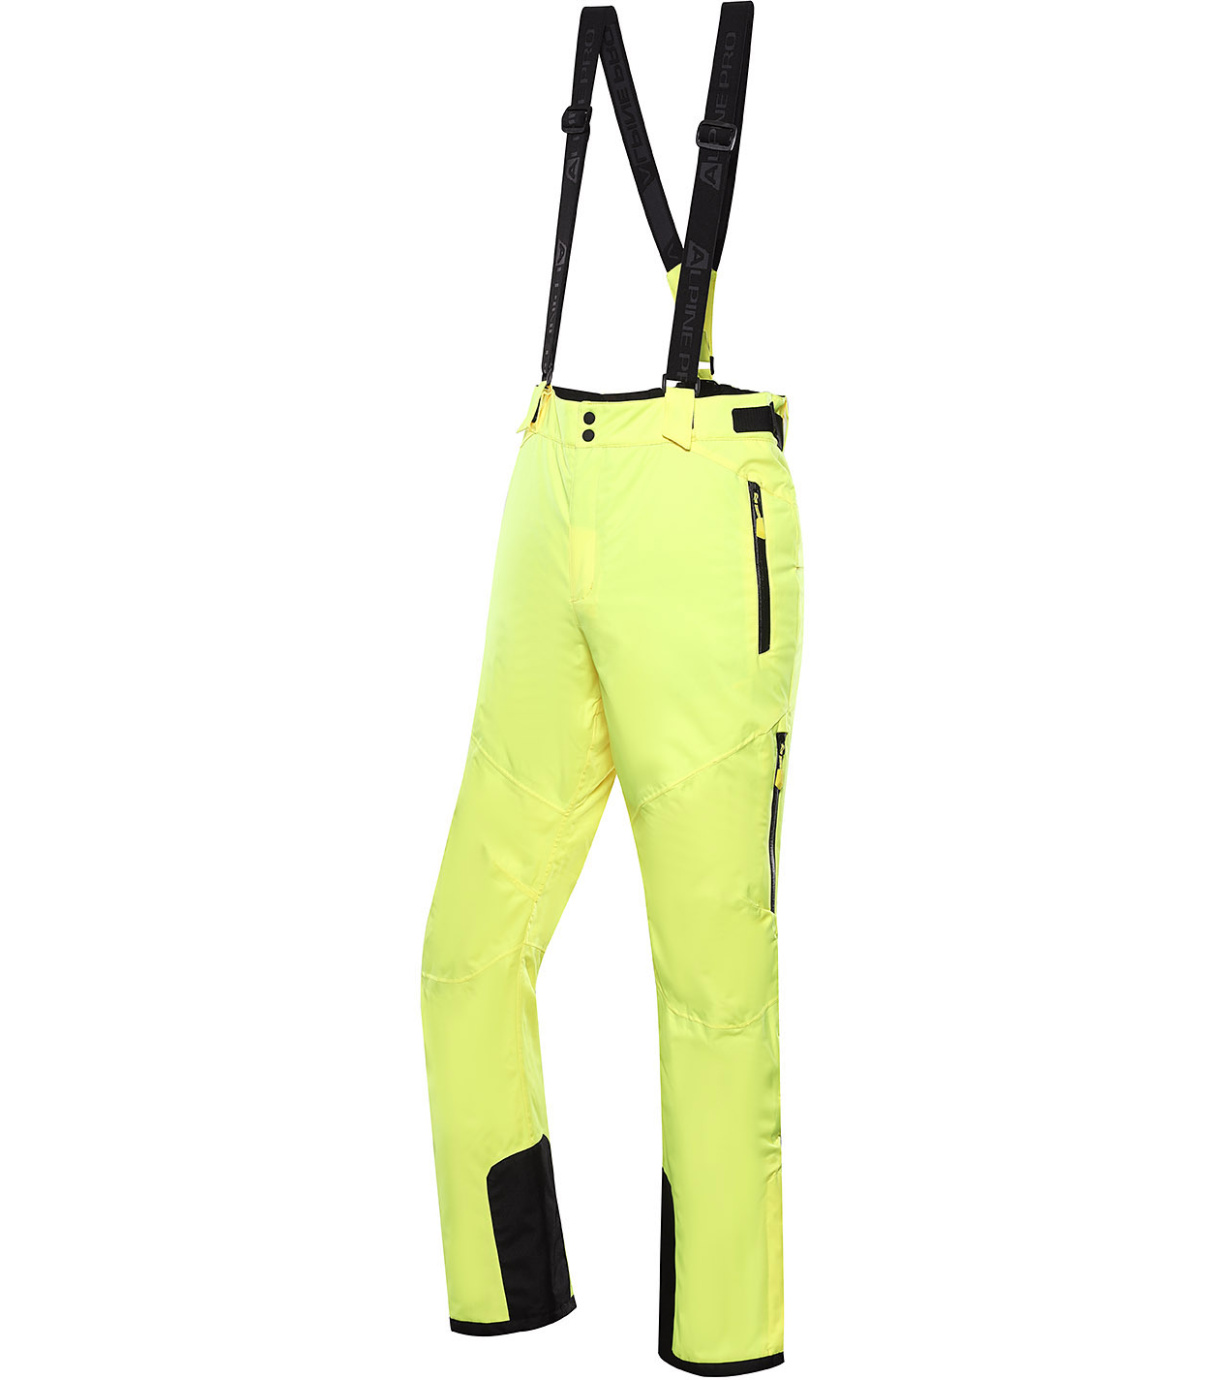 Pánské lyžařské kalhoty LERMON ALPINE PRO 236